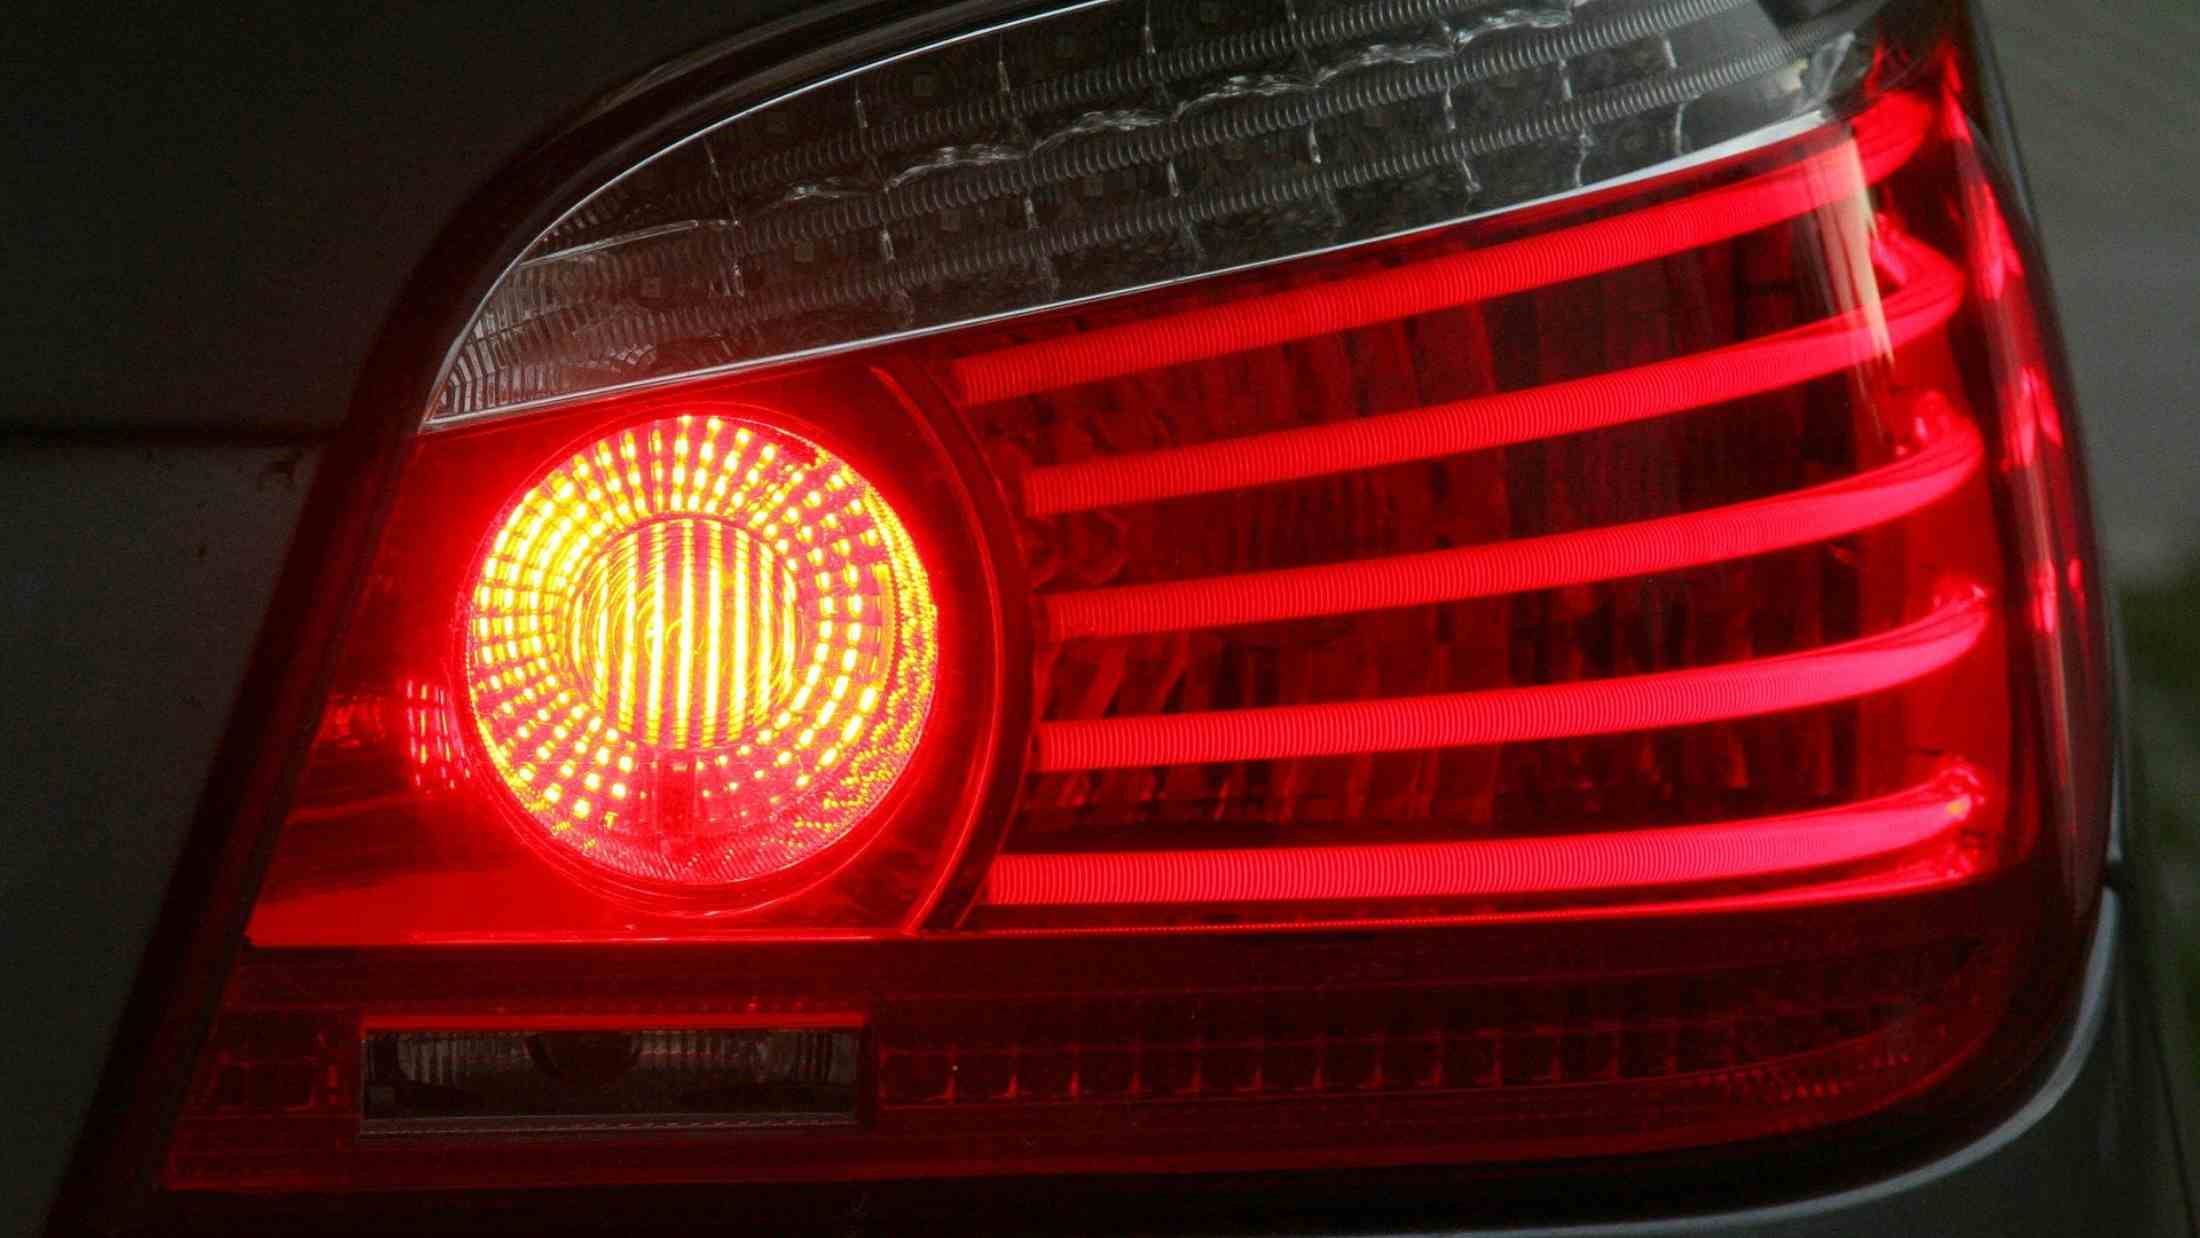 A car reverse light